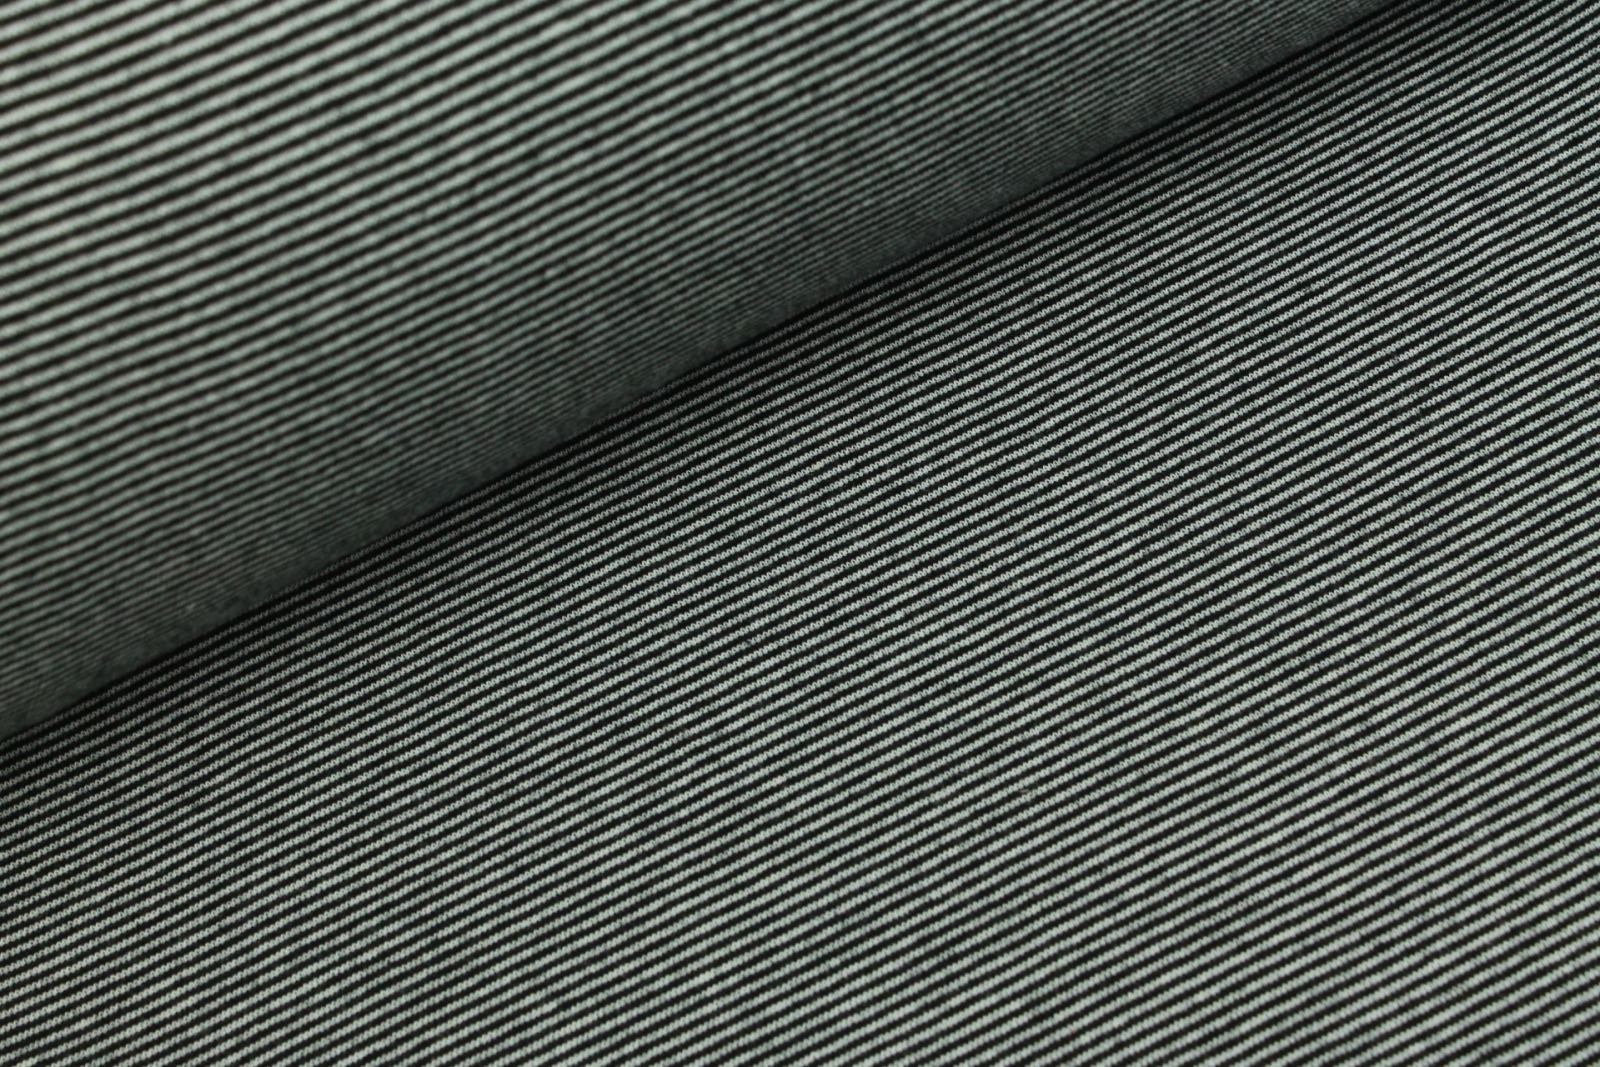 05m Ringelbündchen Bündchen glatt Streifen schwarz weiß